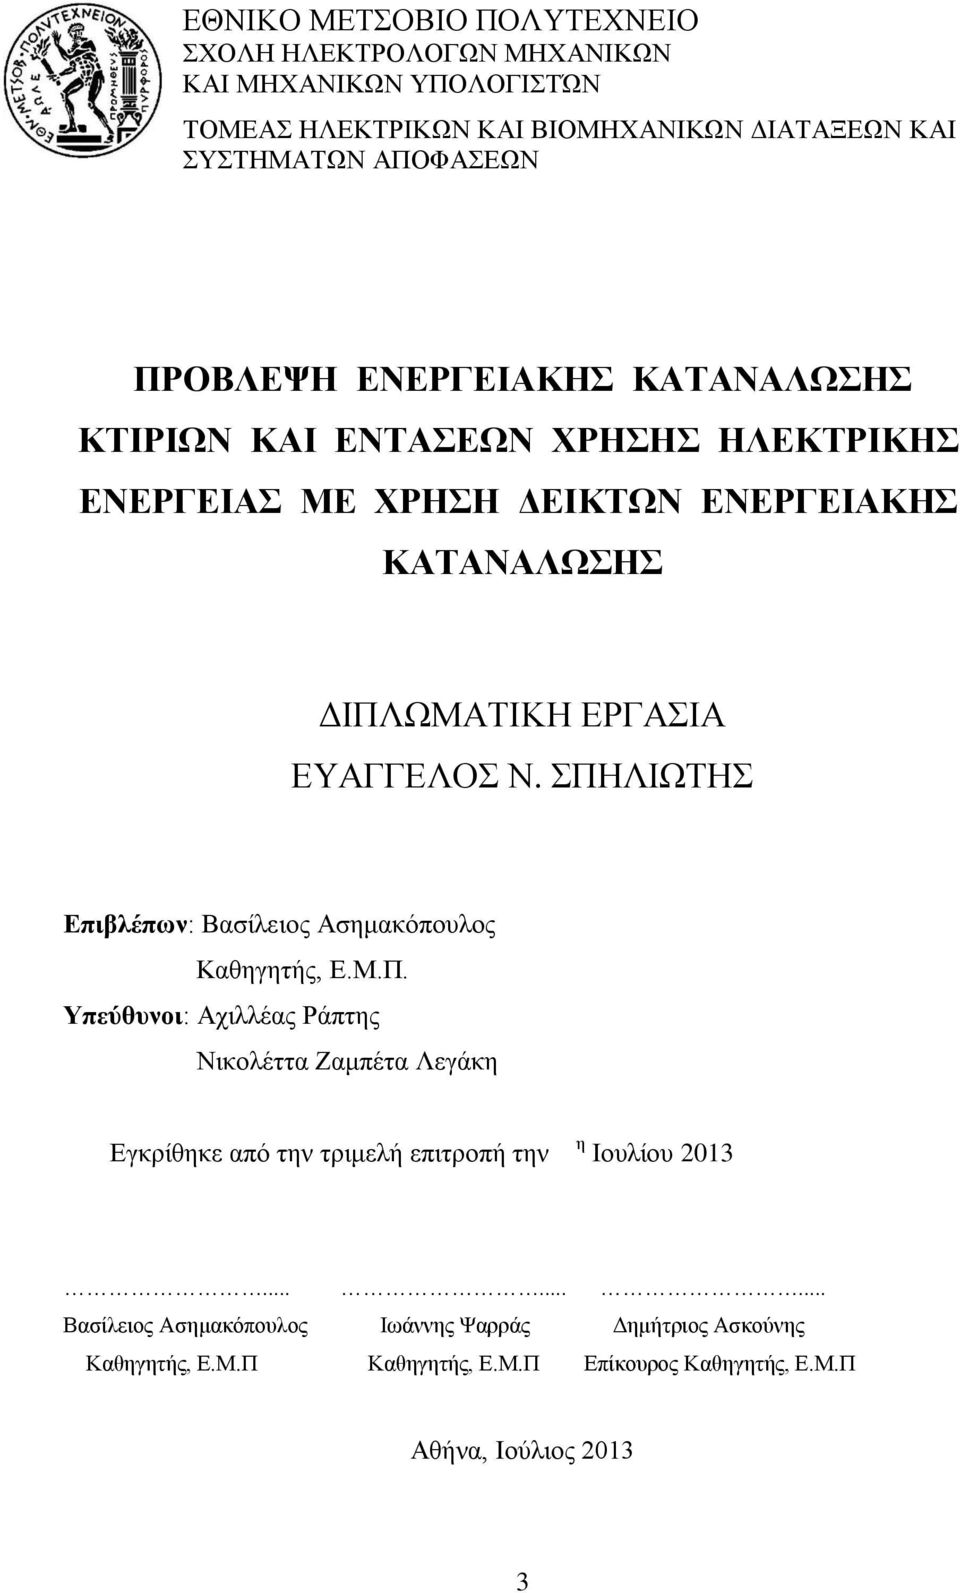 ΣΠΗΛΙΩΤΗΣ Επιβλέπων: Βασίλειος Ασημακόπουλος Καθηγητής, Ε.Μ.Π. Υπεύθυνοι: Αχιλλέας Ράπτης Νικολέττα Ζαμπέτα Λεγάκη Εγκρίθηκε από την τριμελή επιτροπή την η Ιουλίου 2013.